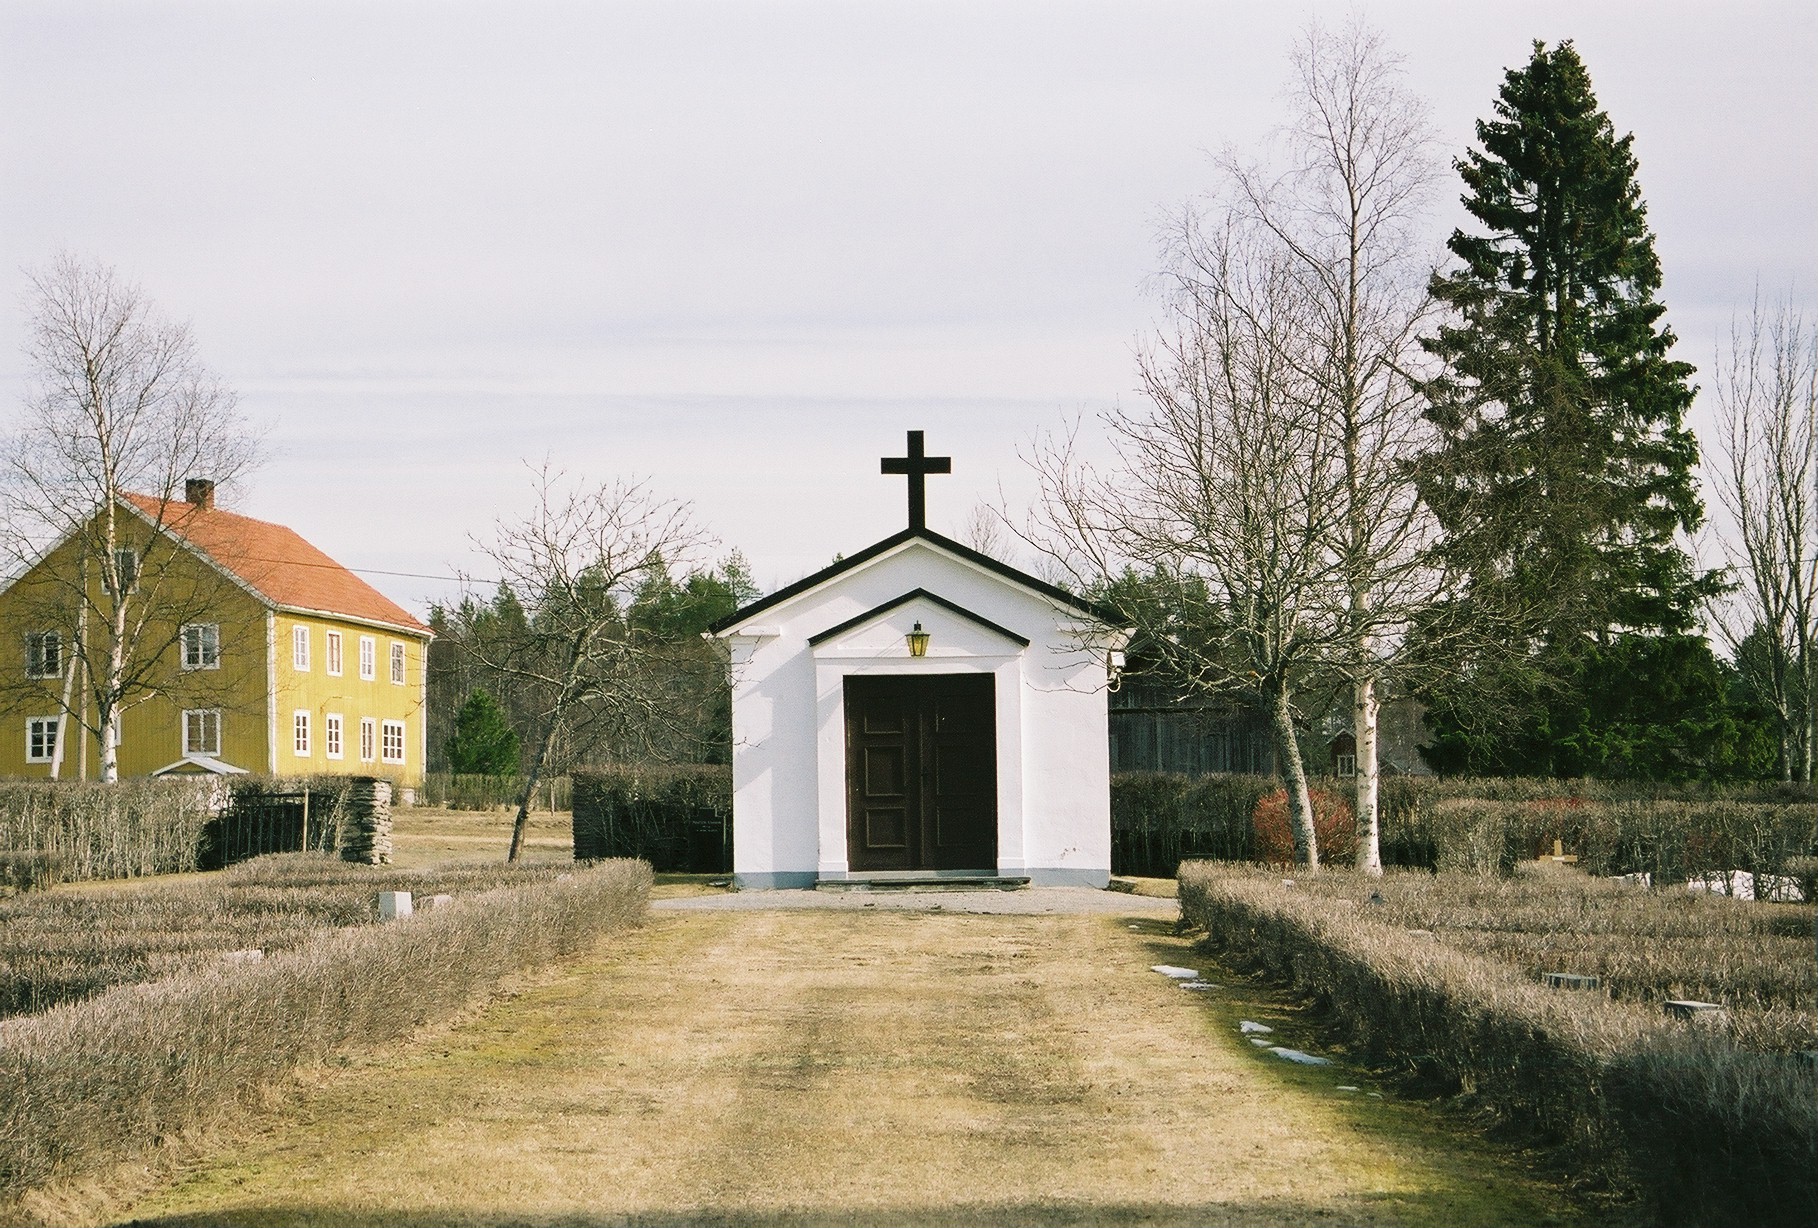 Bårhuset på kyrkogården. 

Isa Lindkvist, bebyggelseantikvarie & Christina Persson, bebyggelseantikvarie vid Jämtlands läns museum, Jamtli, inventerade kyrkor i Härnösands stift 2005-2006. 